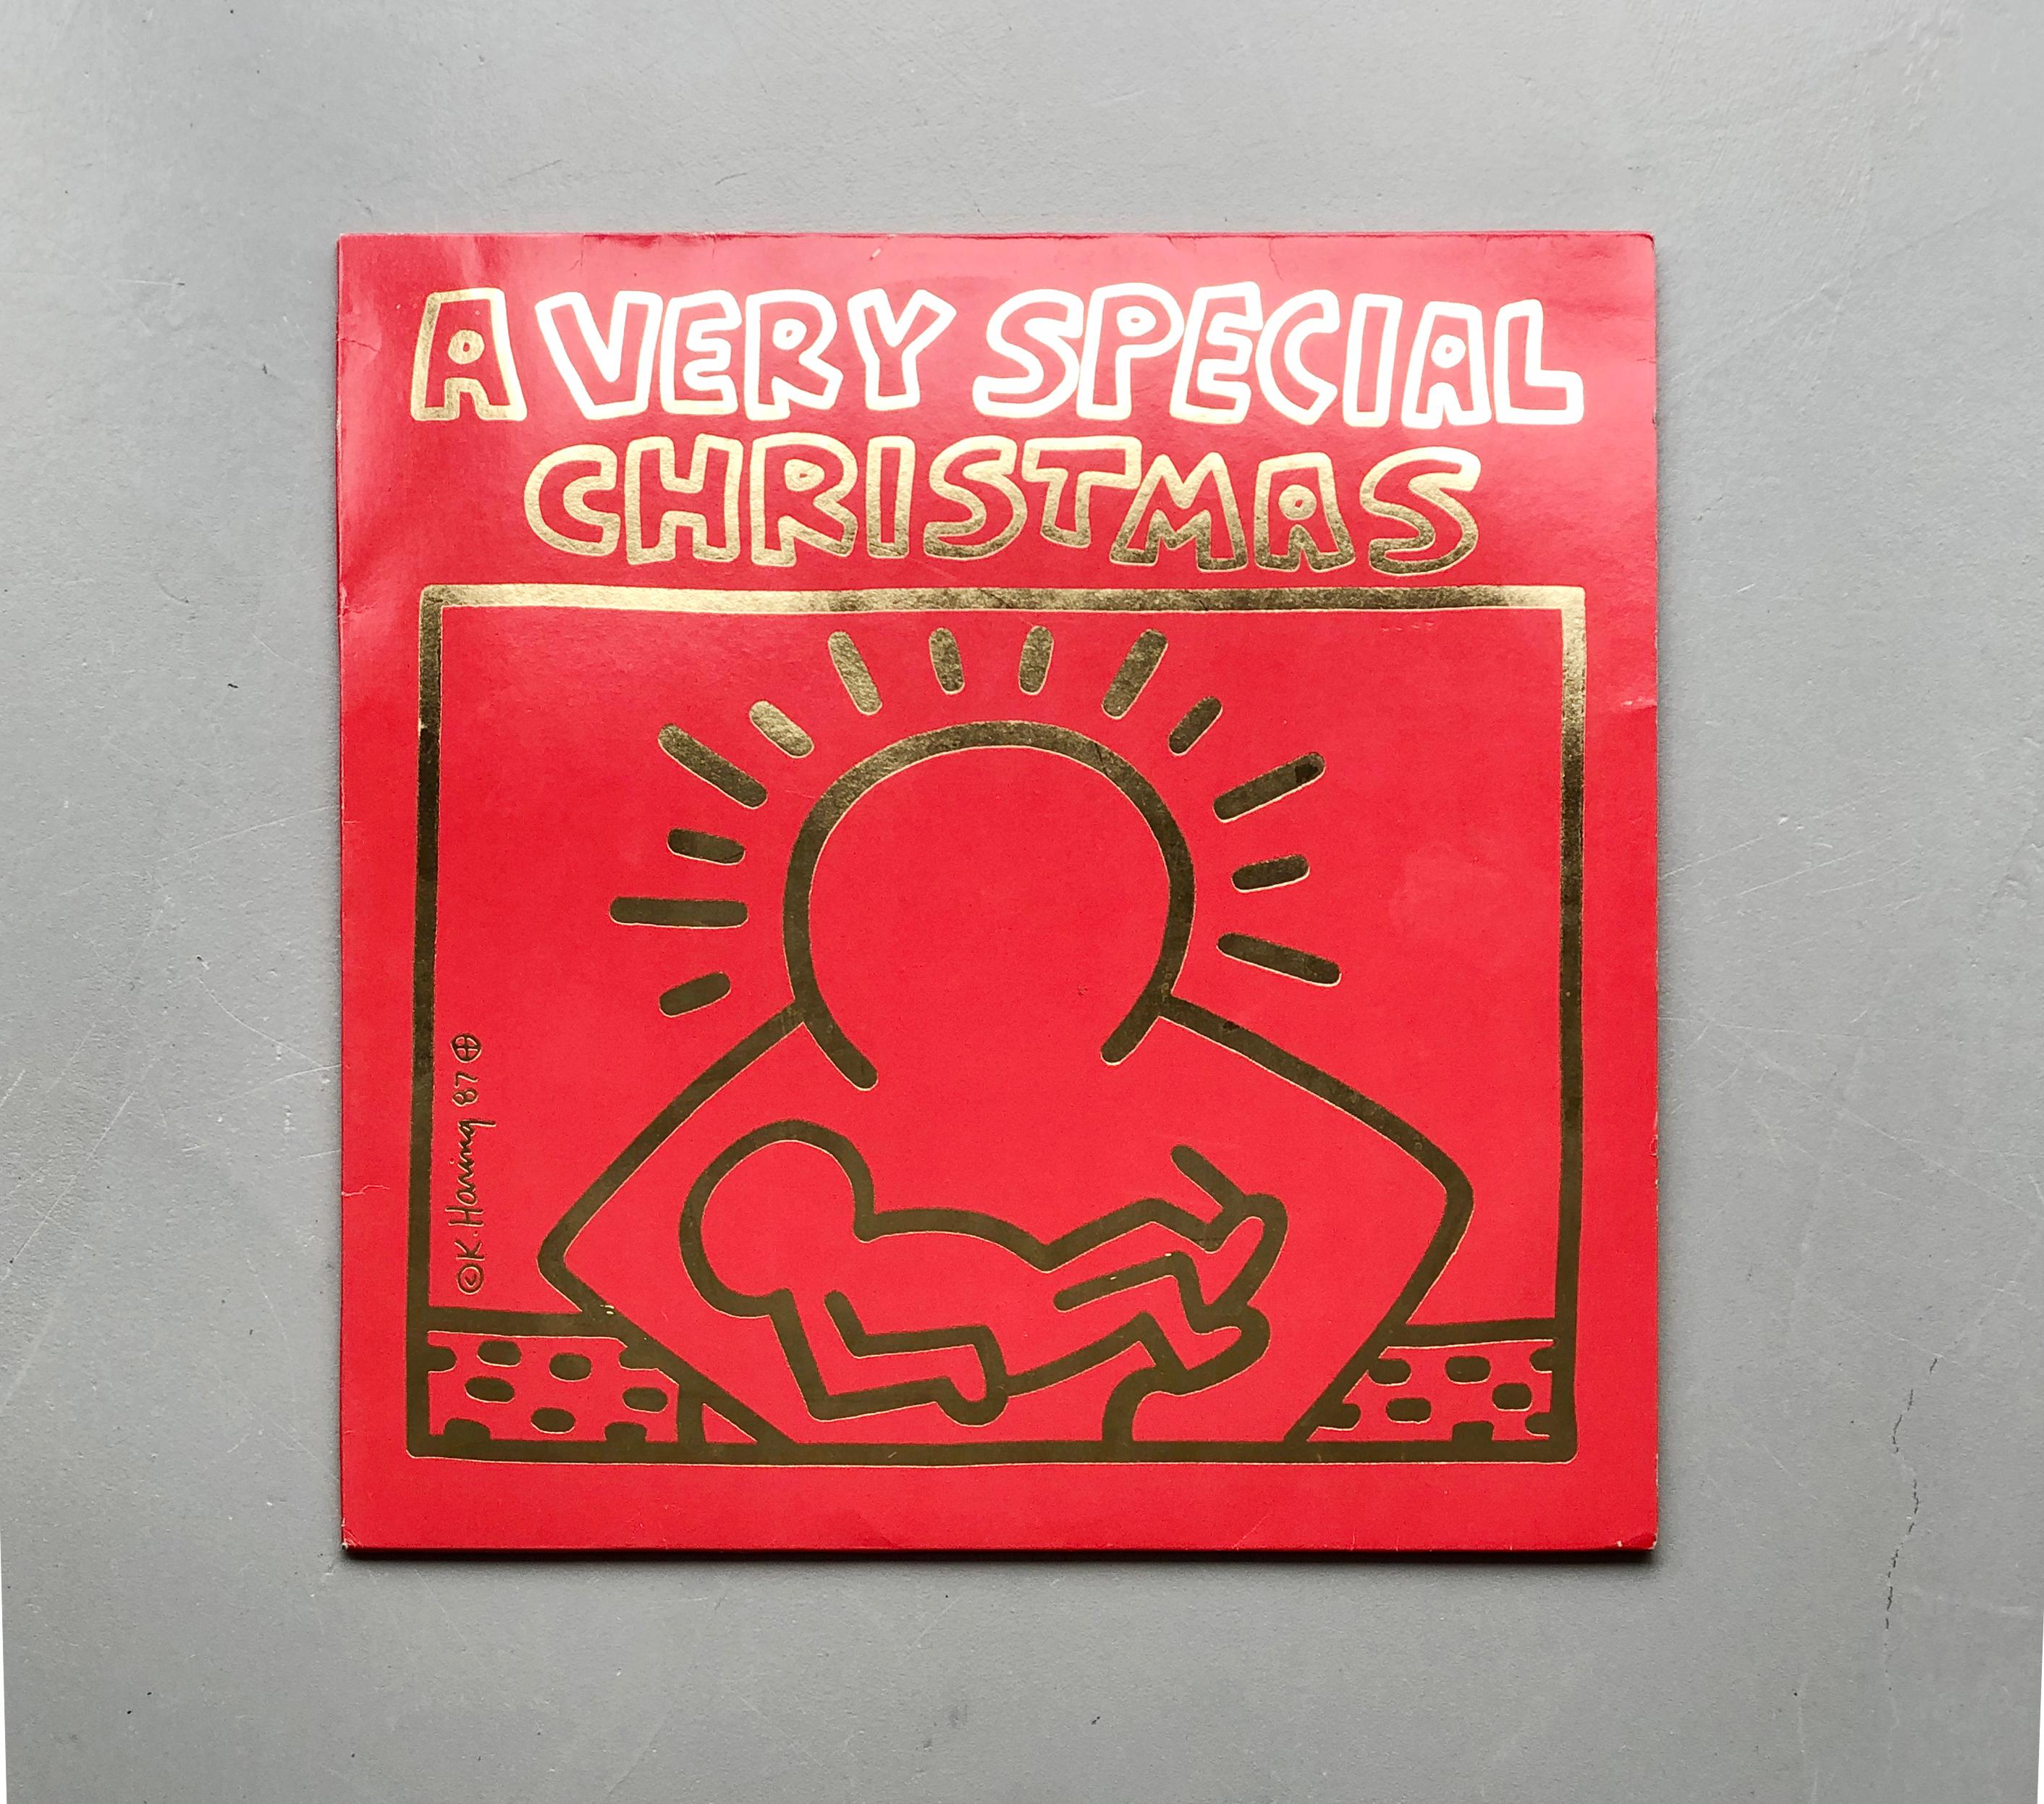 Un Noël très spécial 
Variously artists
1987 premier pressage disque vinyle
A&M Records - SP-3911
Couverture réalisée par Keith Haring

Ce disque en vinyle, pressage original de 1987, présente l'illustration distinctive de Keith Haring et constitue